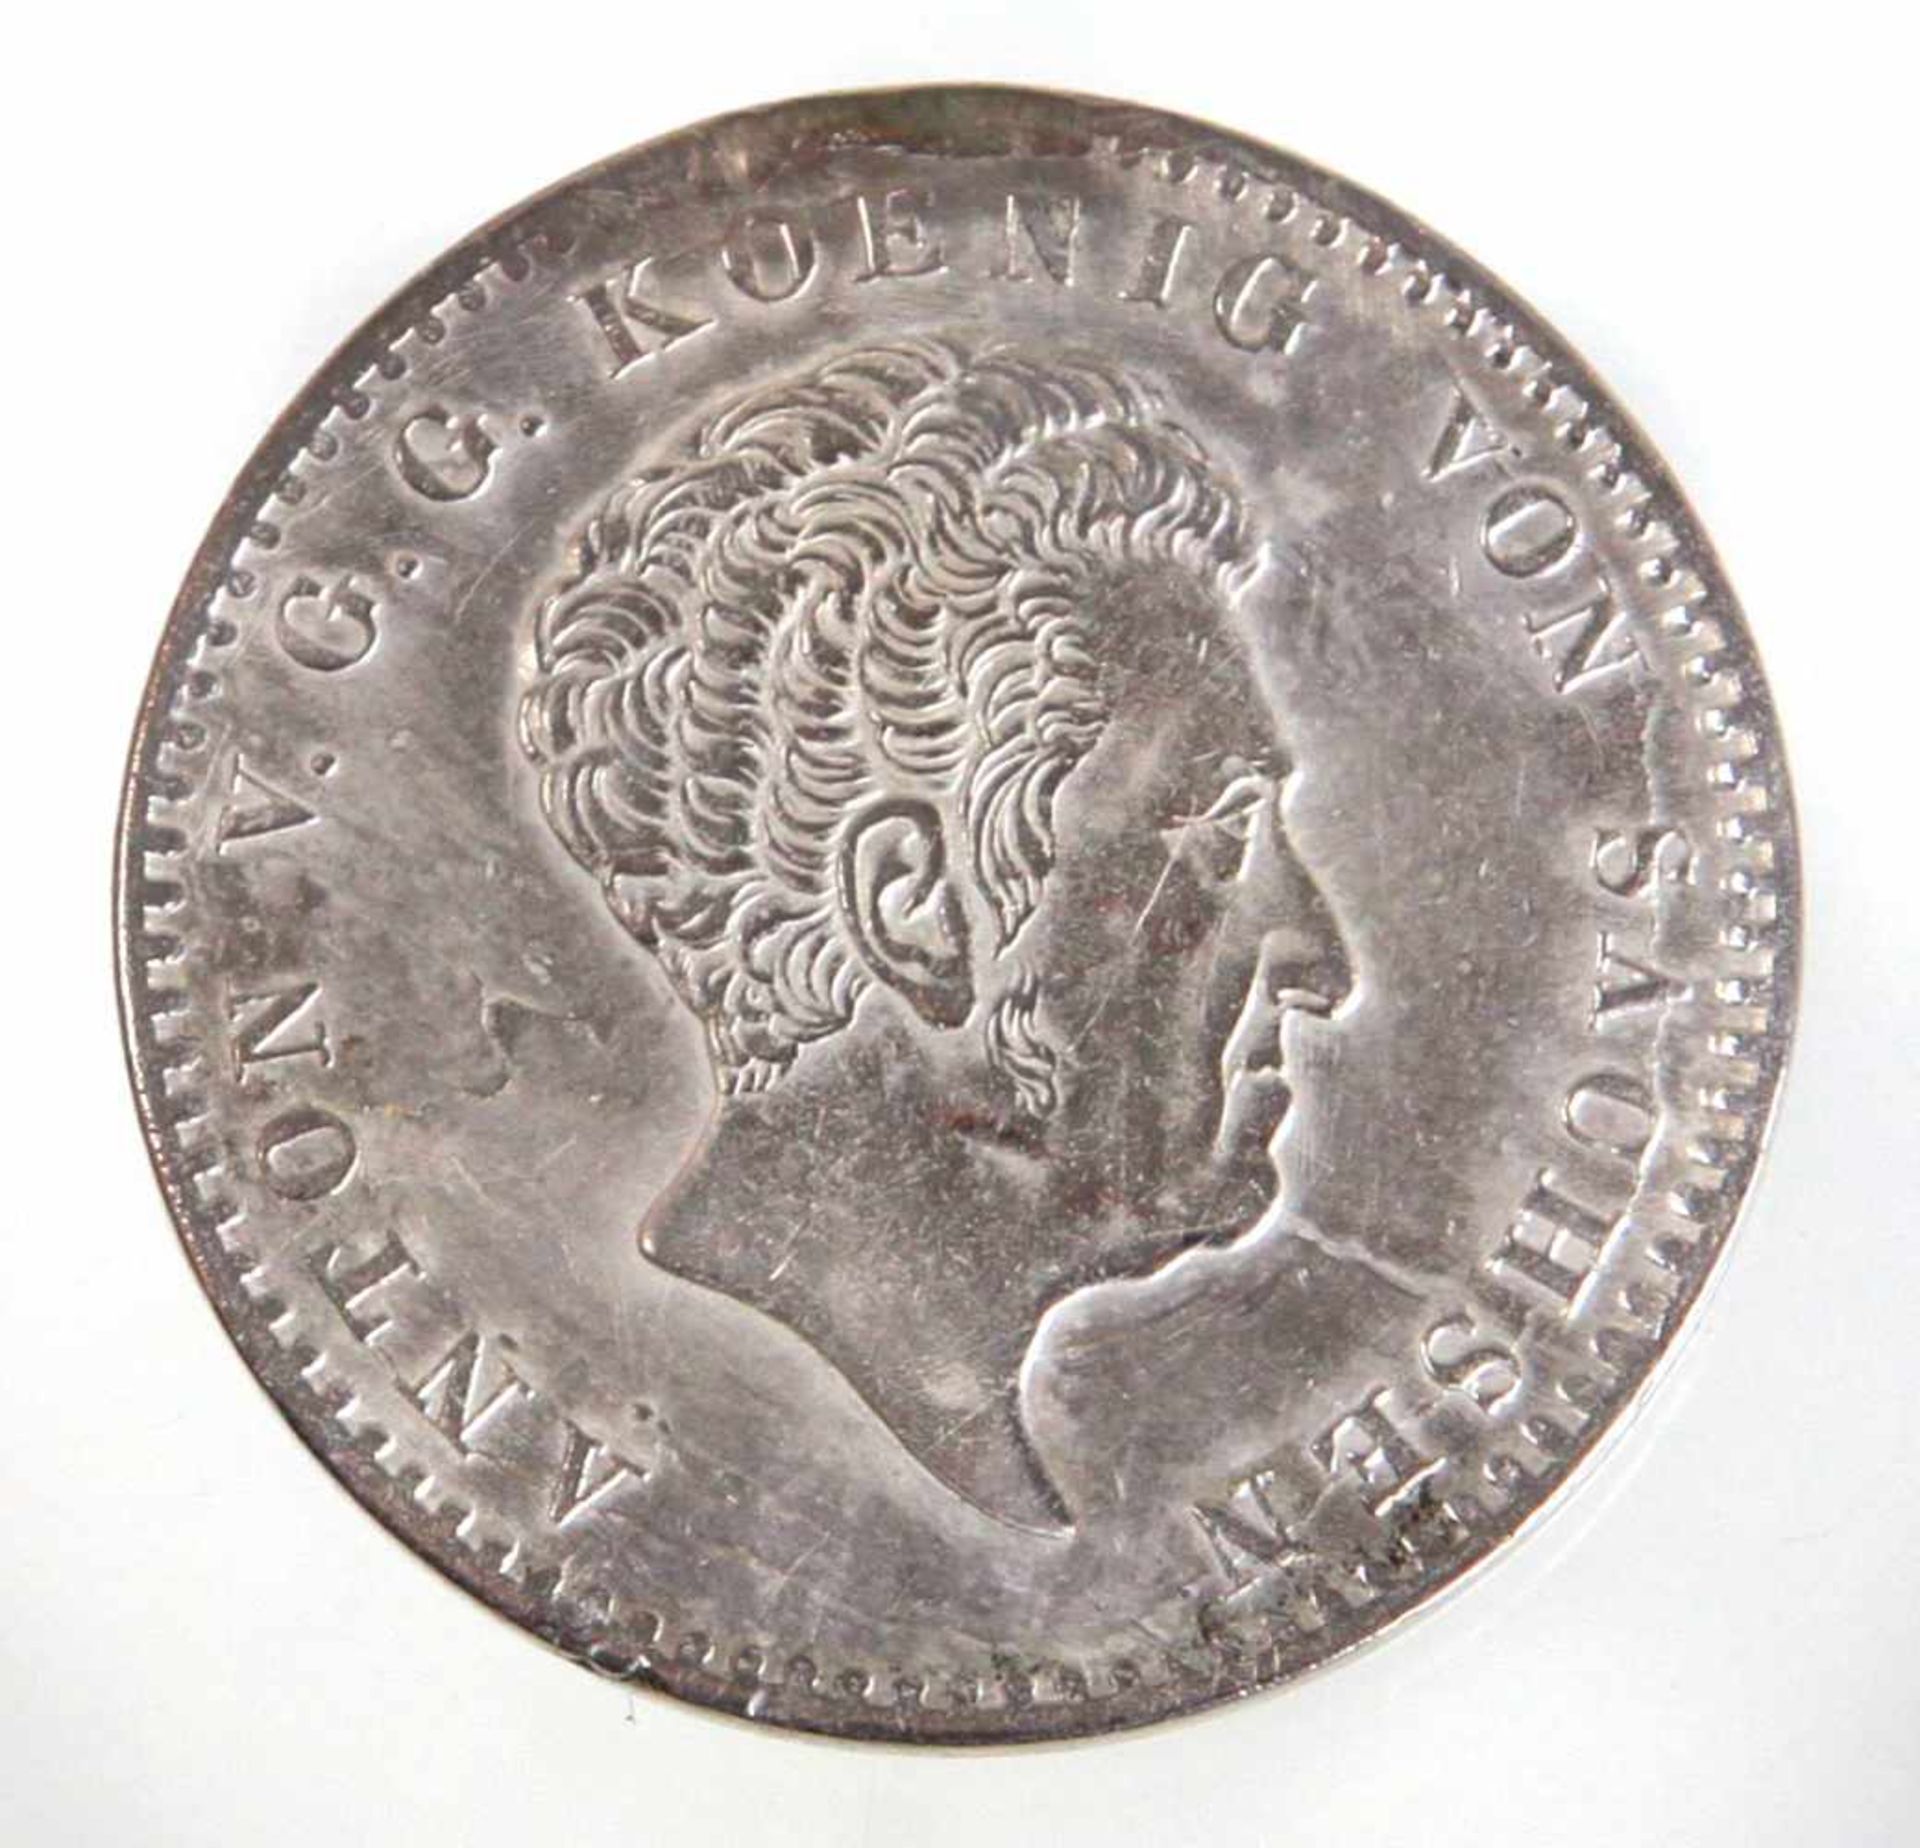 Silbermünze Sachsen 1830revers bekröntes Sachsenwappen mit Umschrift *Vierzig- Eine Feine Mark 1.3.